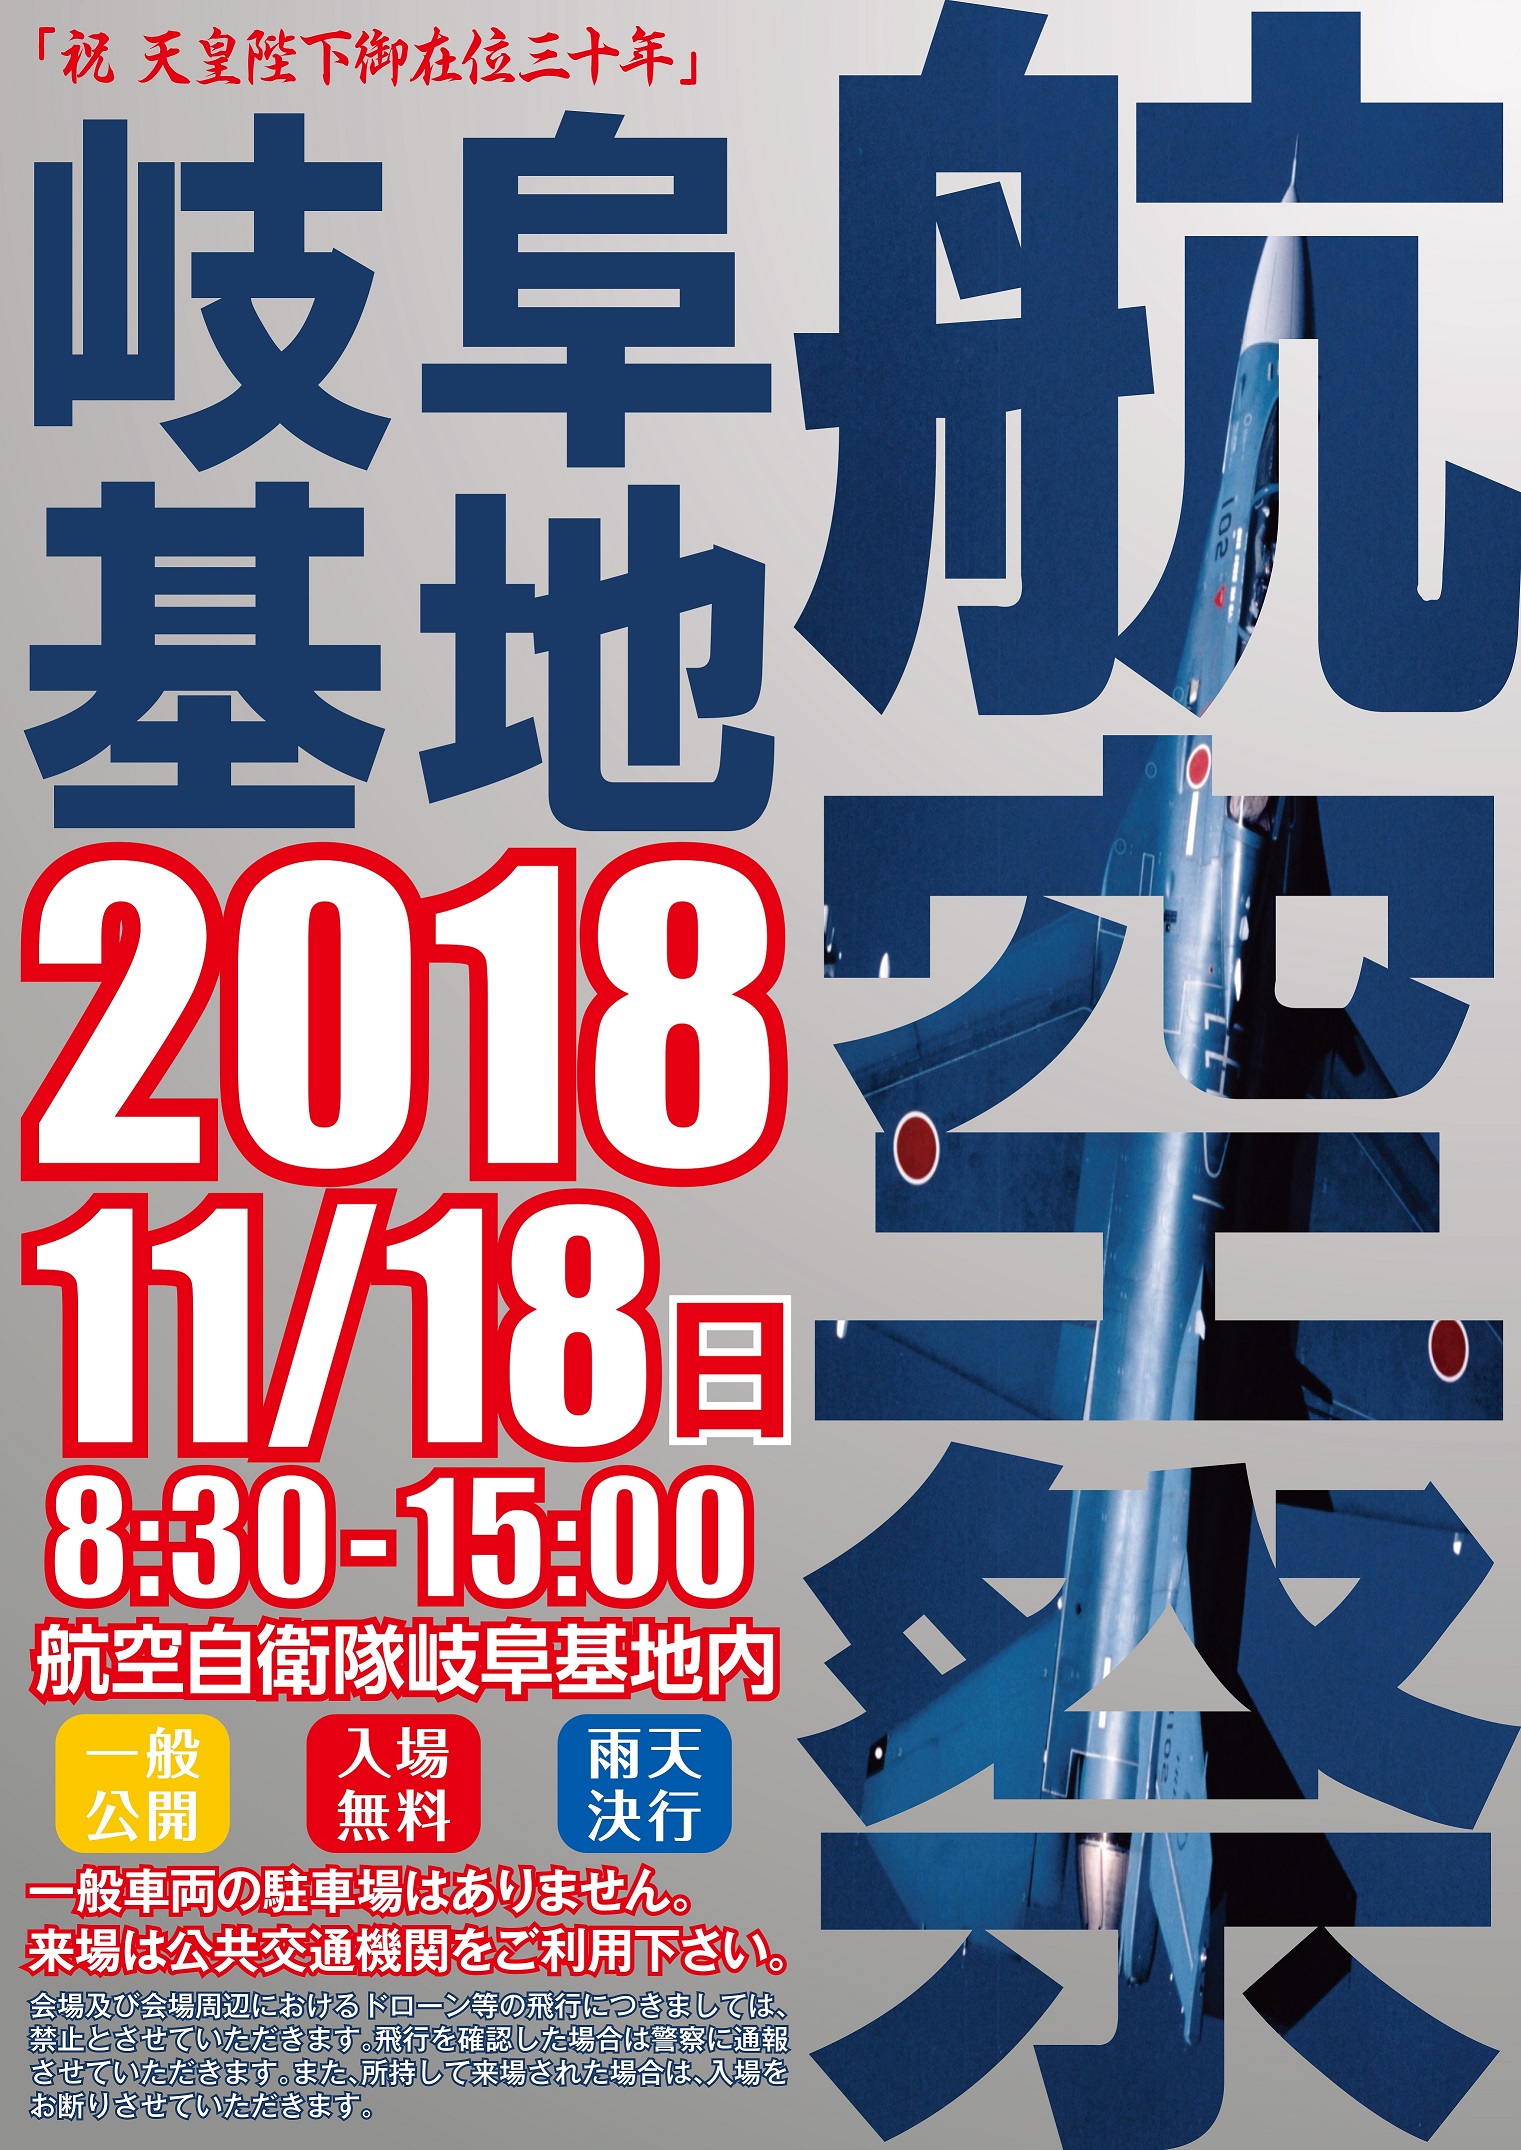 岐阜基地航空祭ポスター